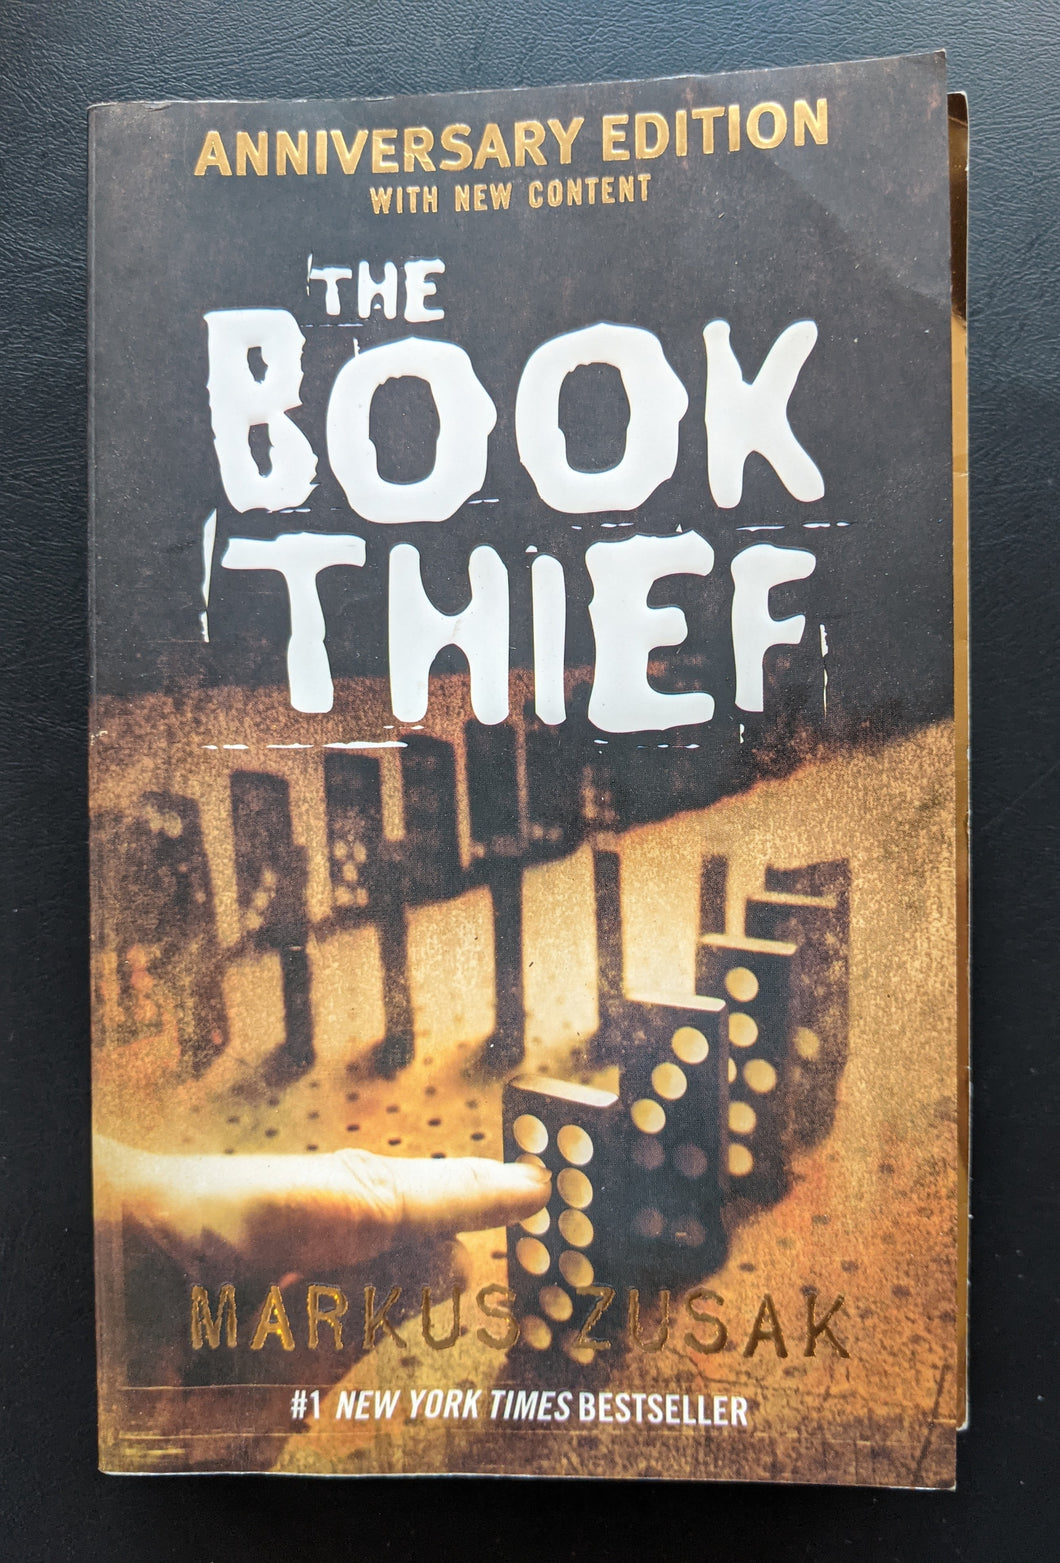 The Book Thief by Markus Zusak's